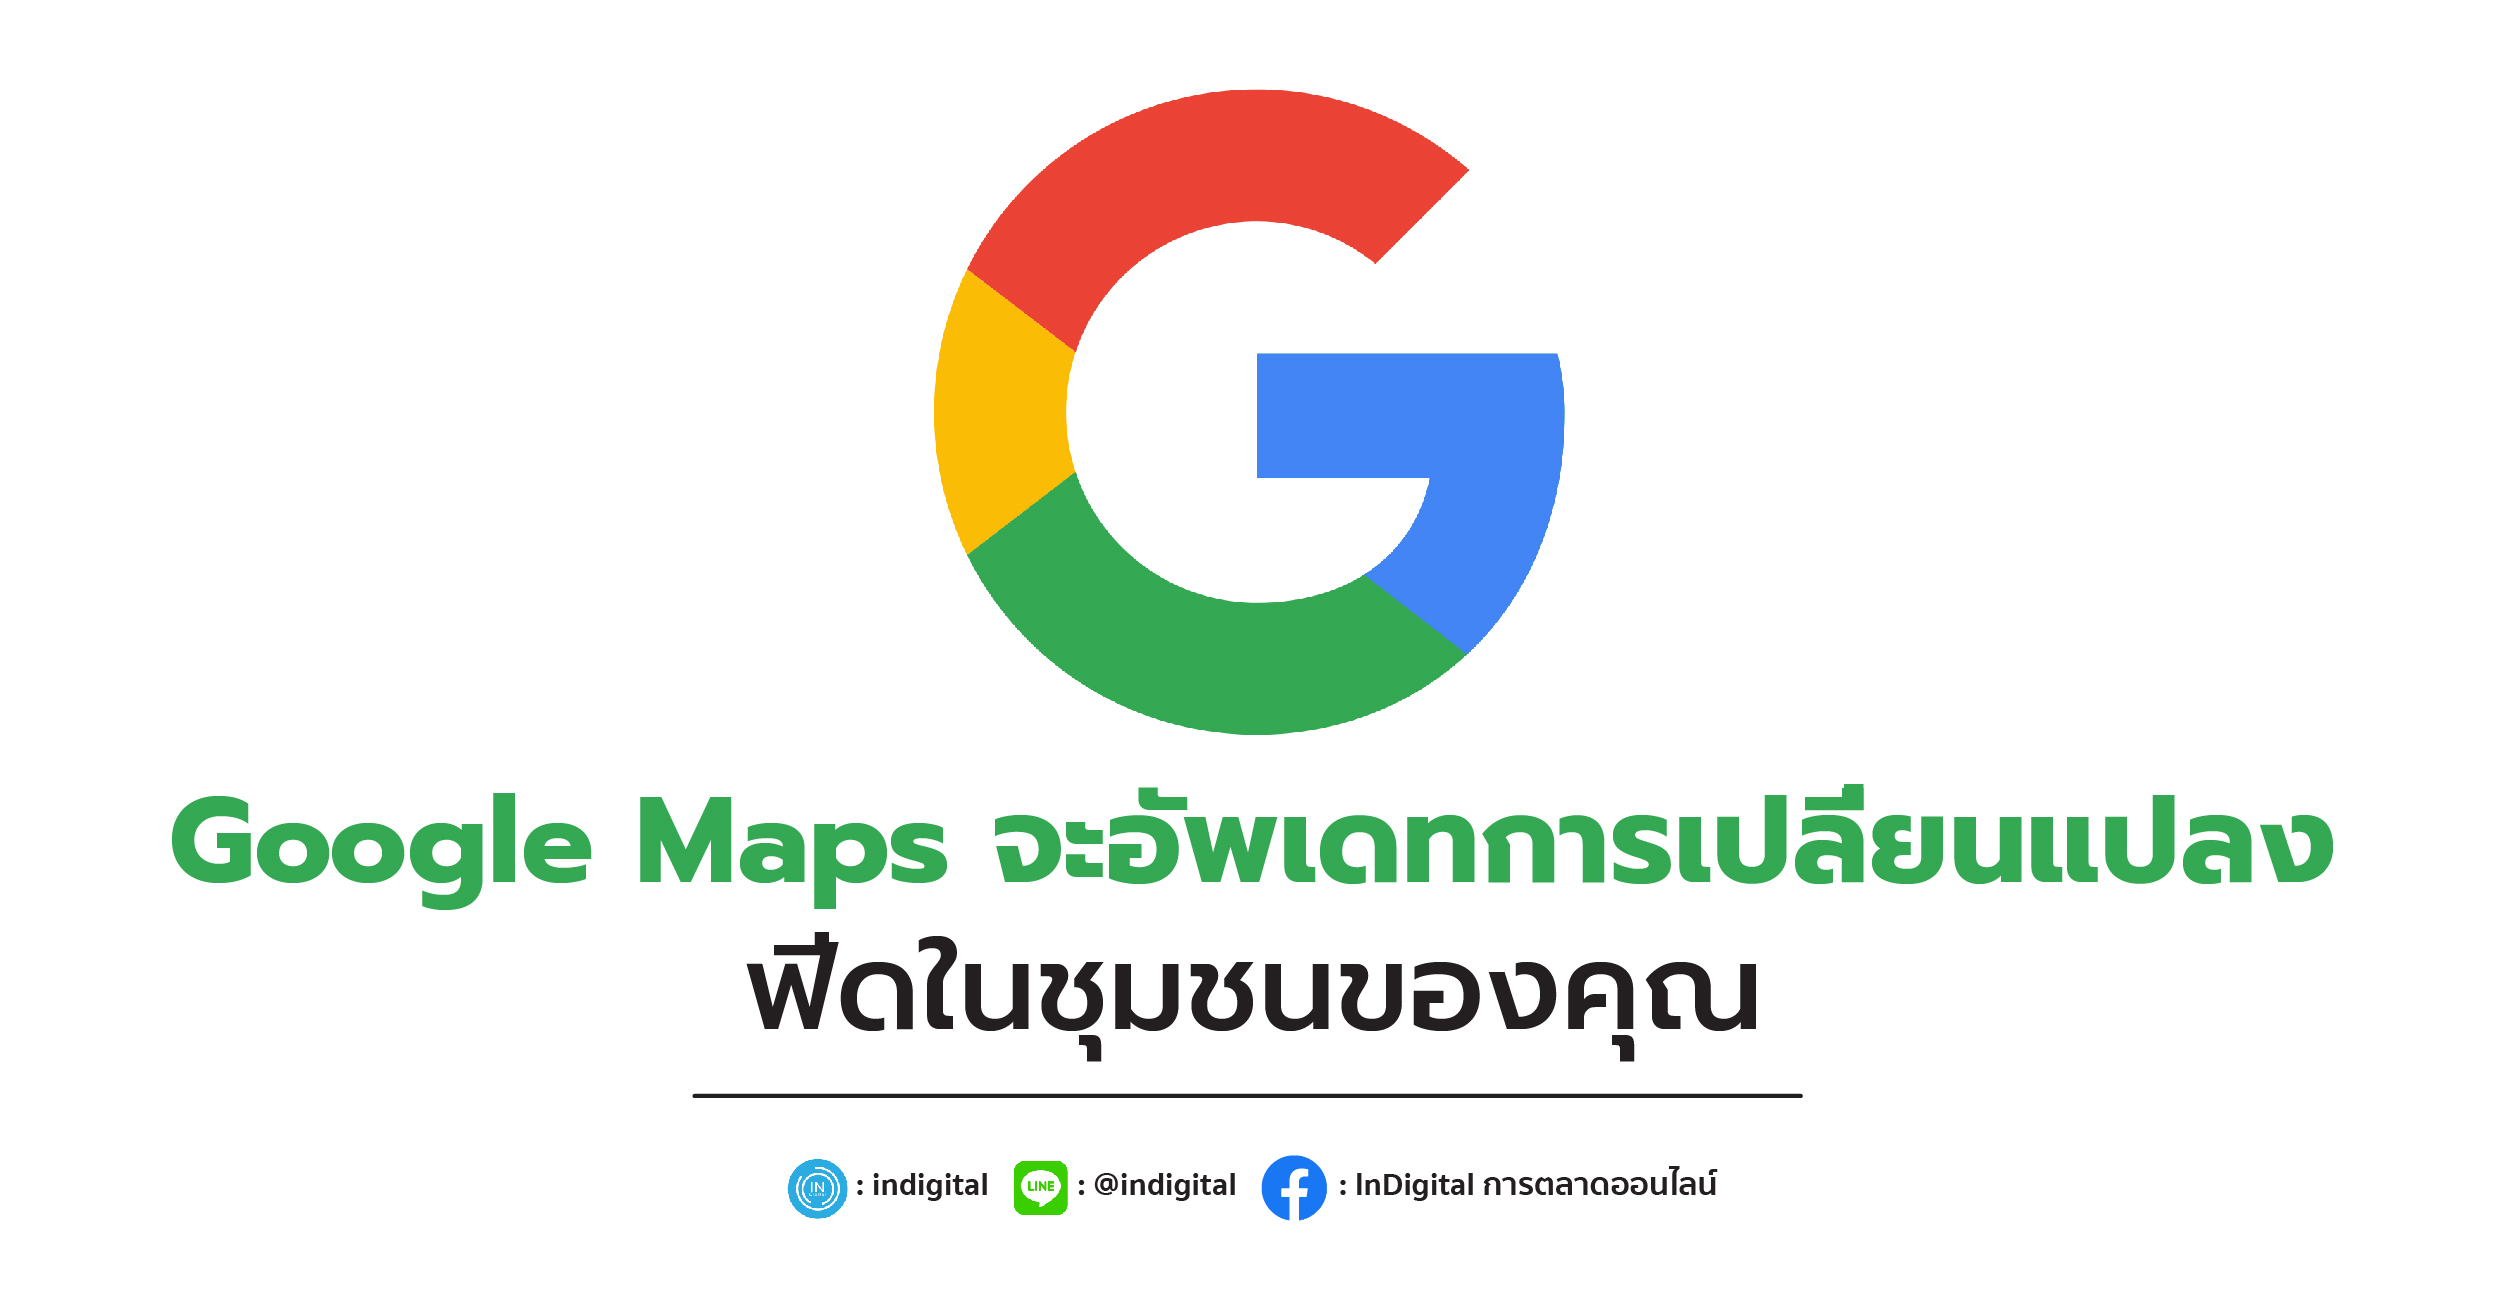 Google Maps จะอัพเดทการเปลี่ยนแปลงฟีดในชุมชนของคุณ